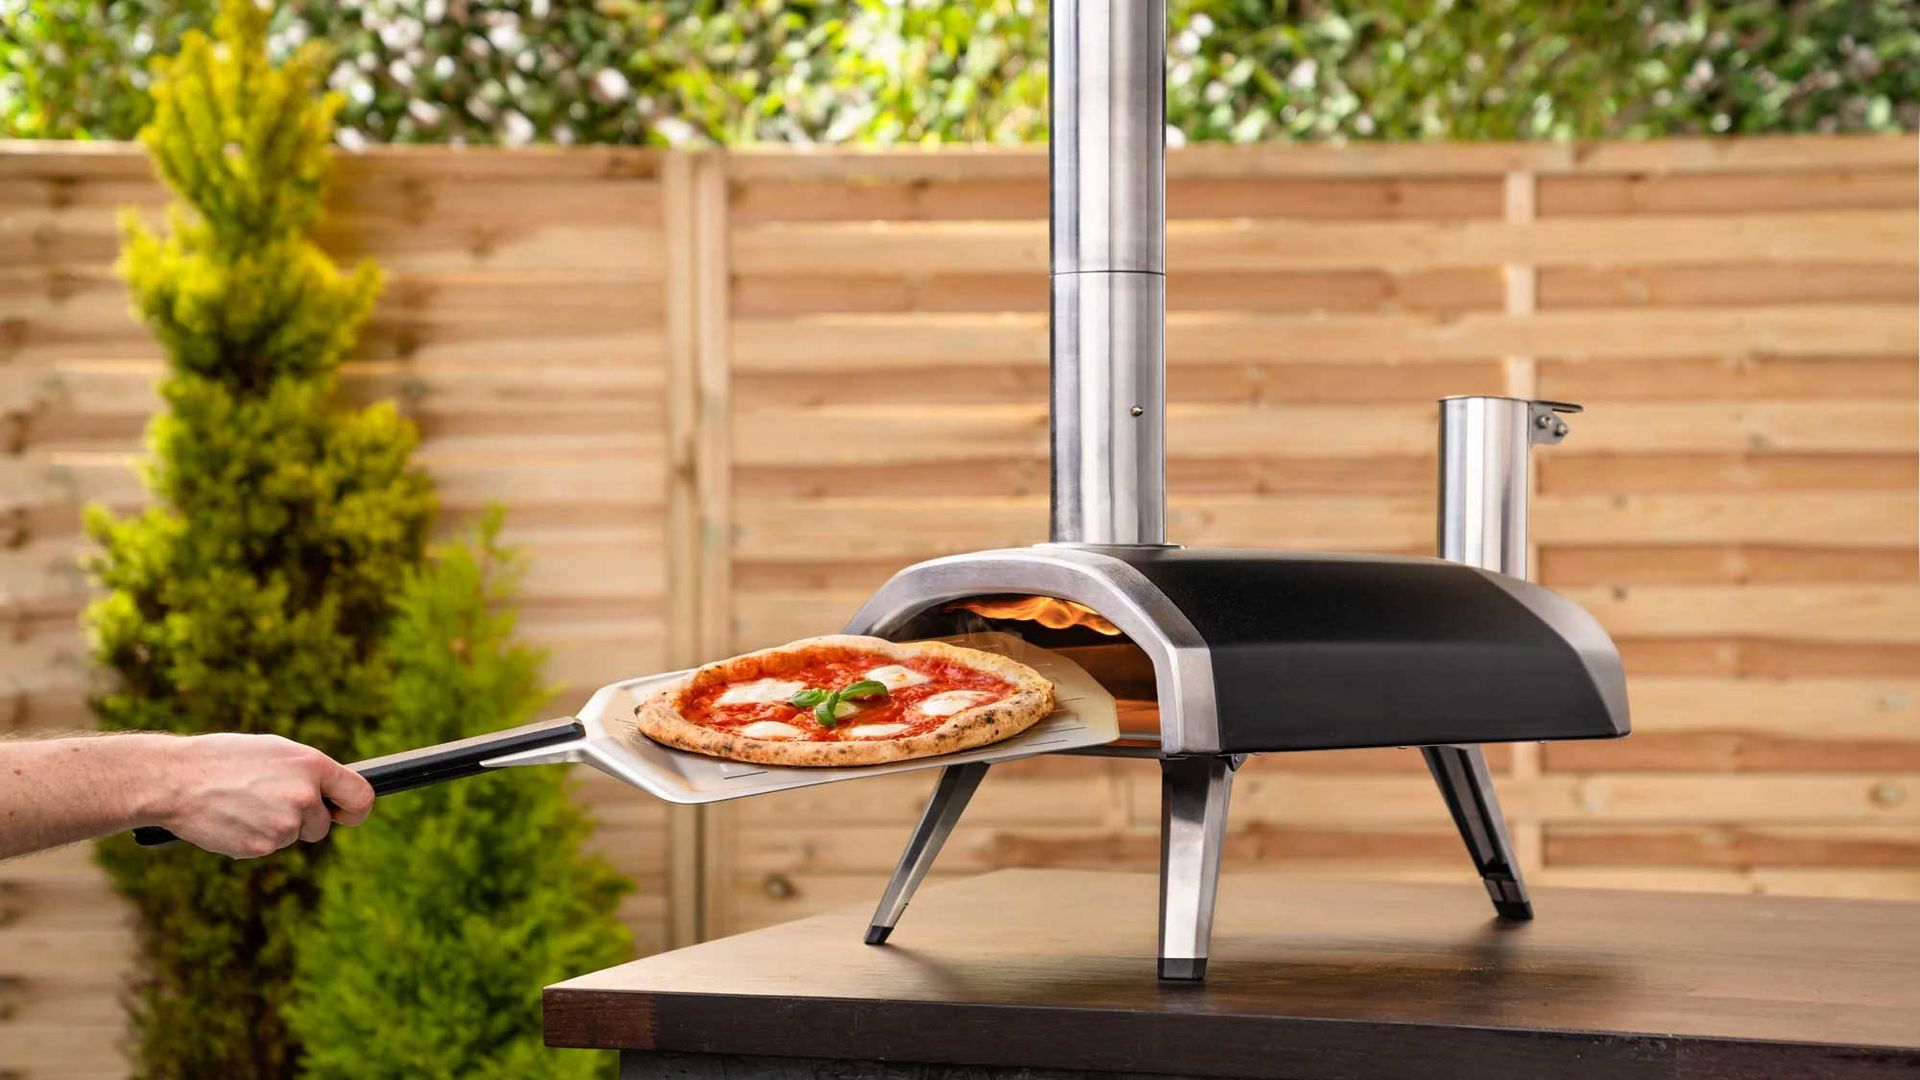 Ooni Pizza Ovens on sale